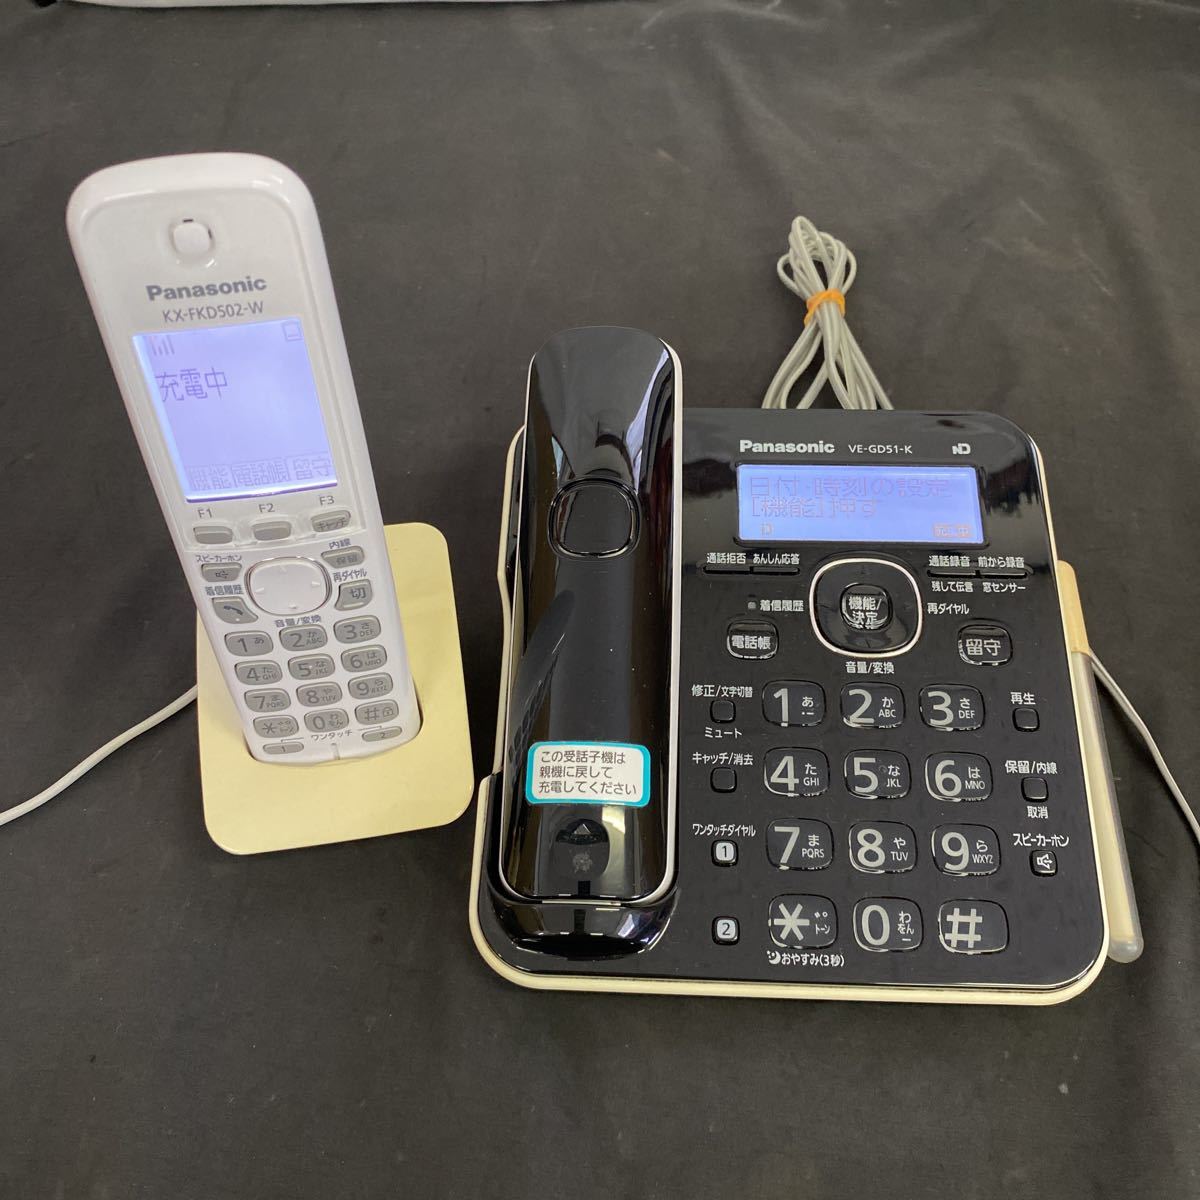 スーパーセール期間限定 Panasonic コードレス電話機 VE-SV08-W パナソニック